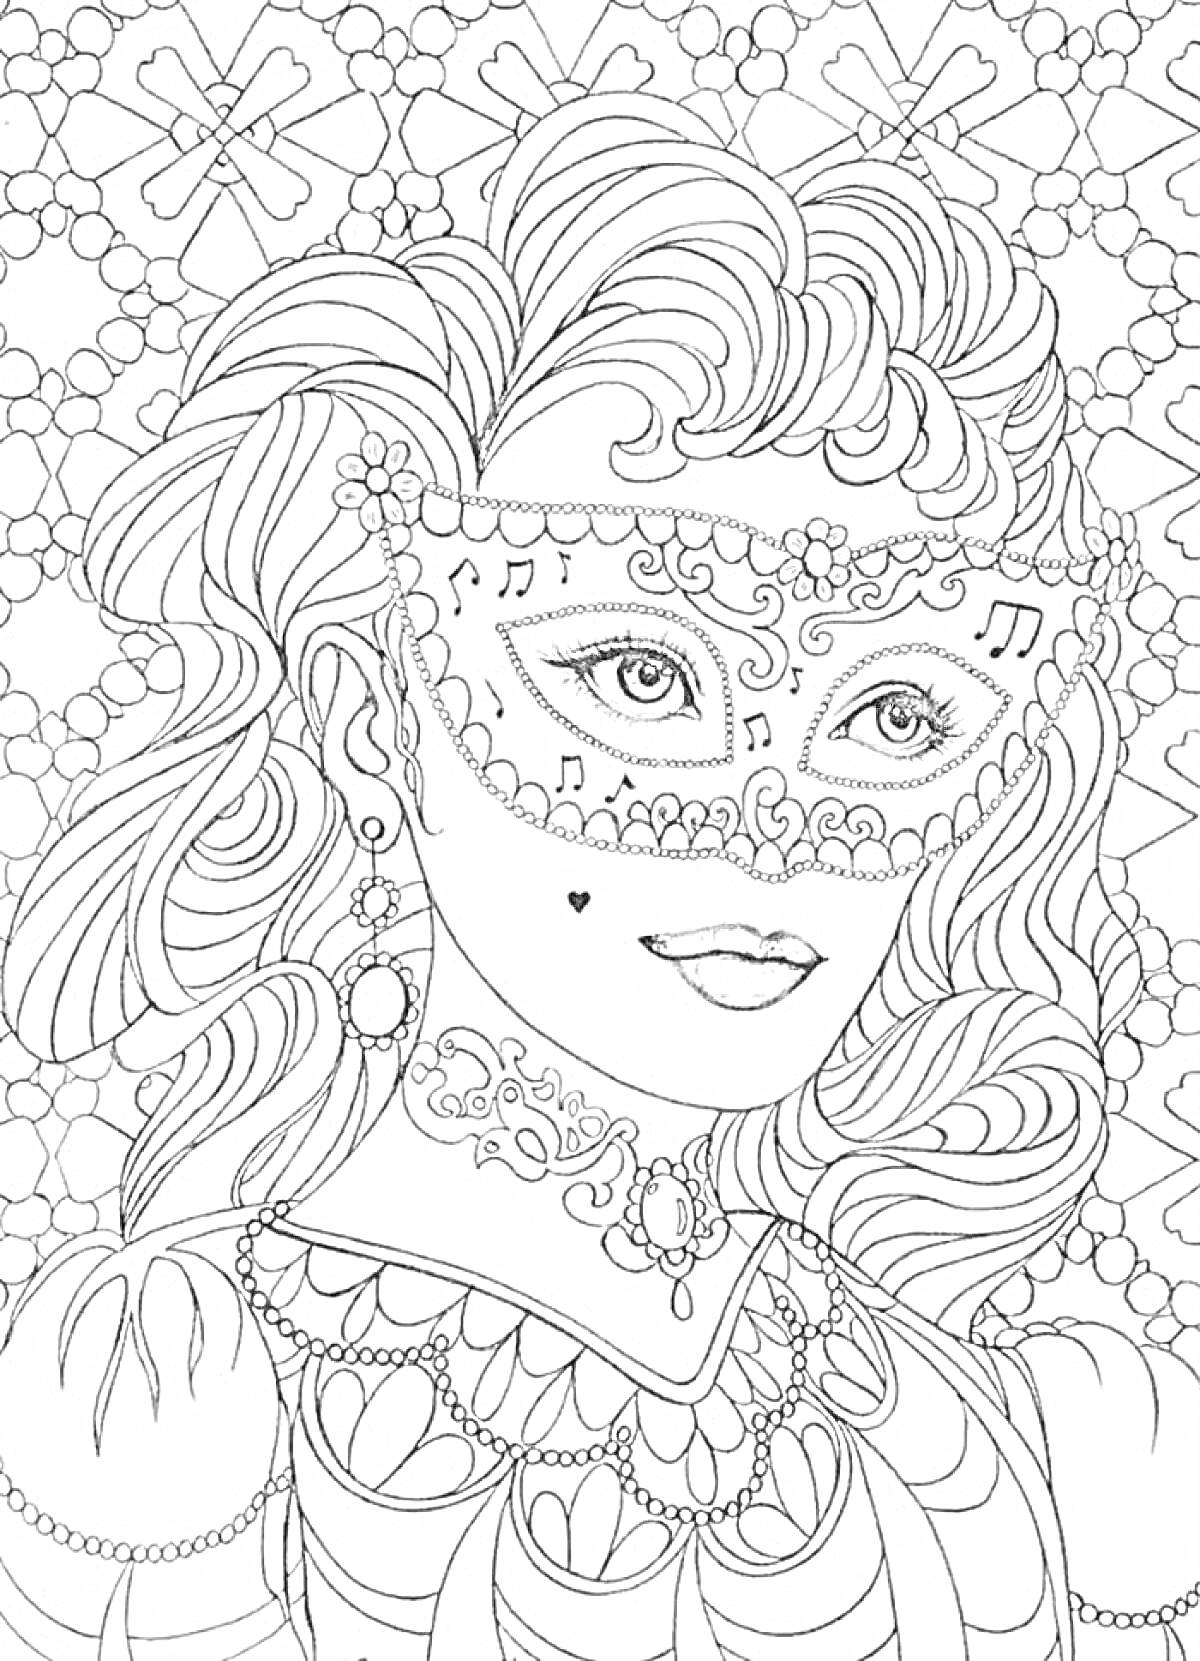 Раскраска Девушка в маске с музыкальными нотами, пышными волосами и богатыми украшениями на фоне узоров